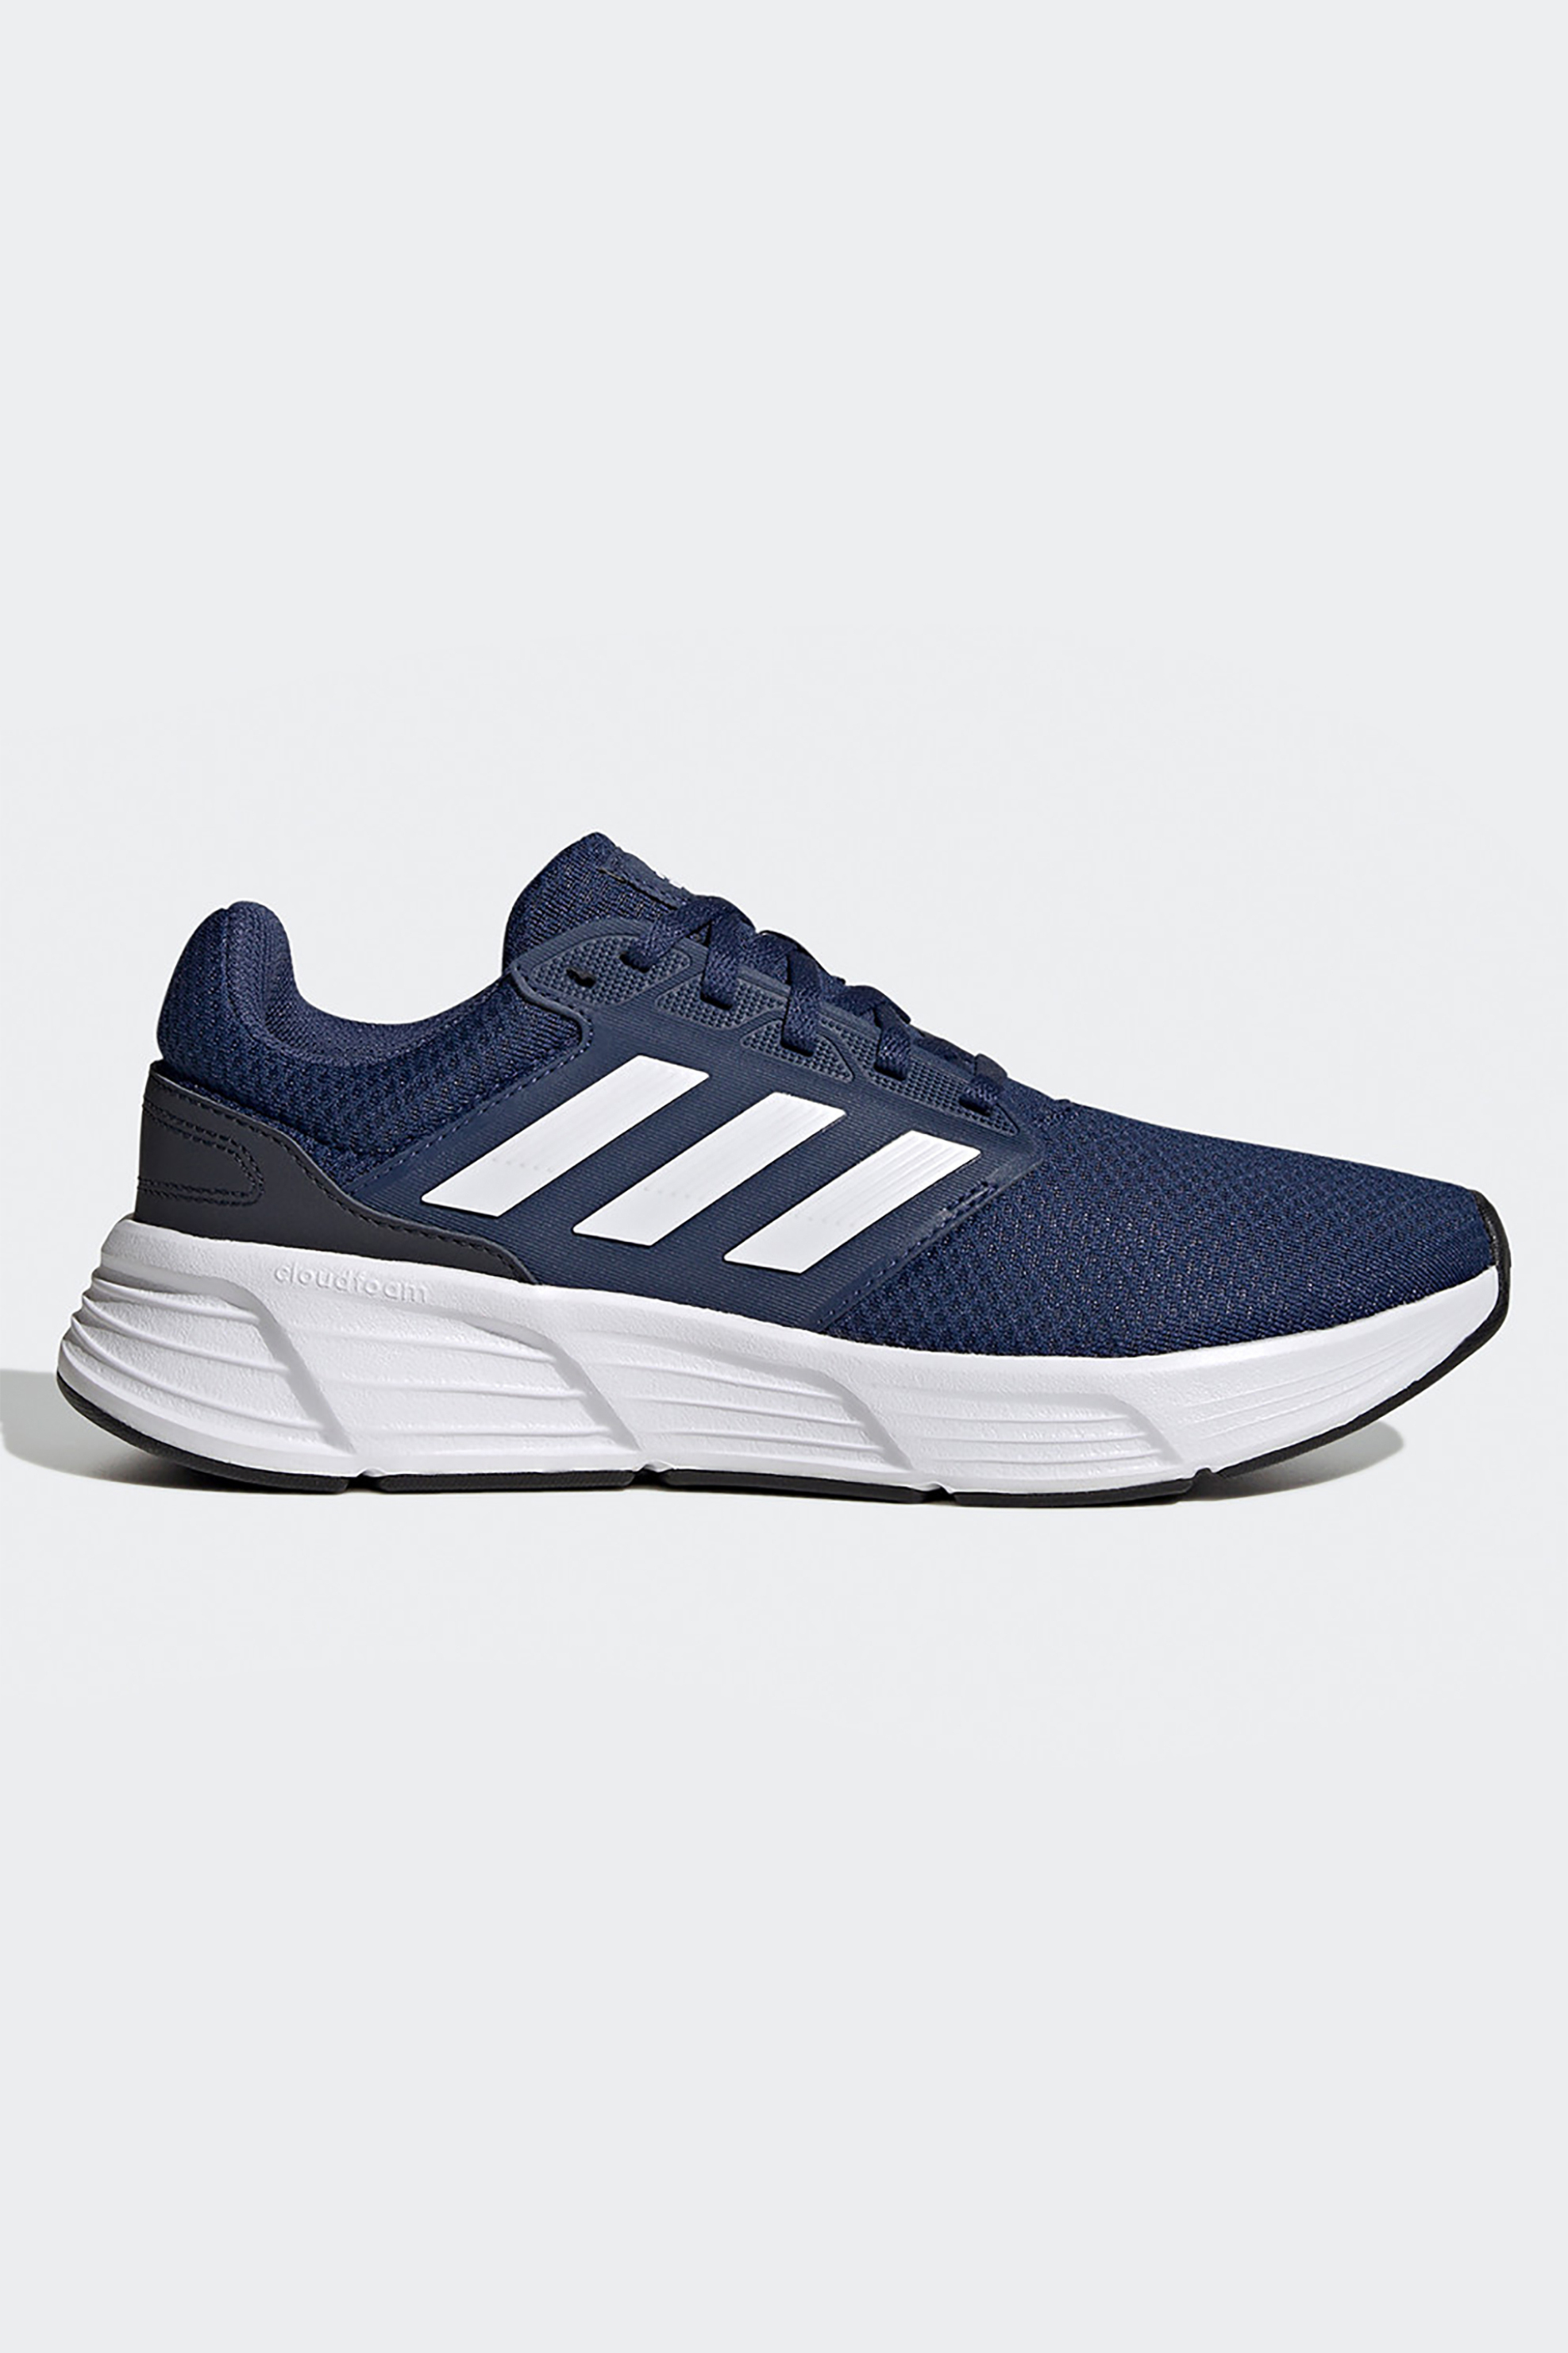 Άνδρας > ΑΘΛΗΤΙΚΑ > Αθλητικά Παπούτσια > Running Adidas ανδρικά αθλητικά παπούτσια running "Galaxy 6" - GW4139 Μπλε Σκούρο